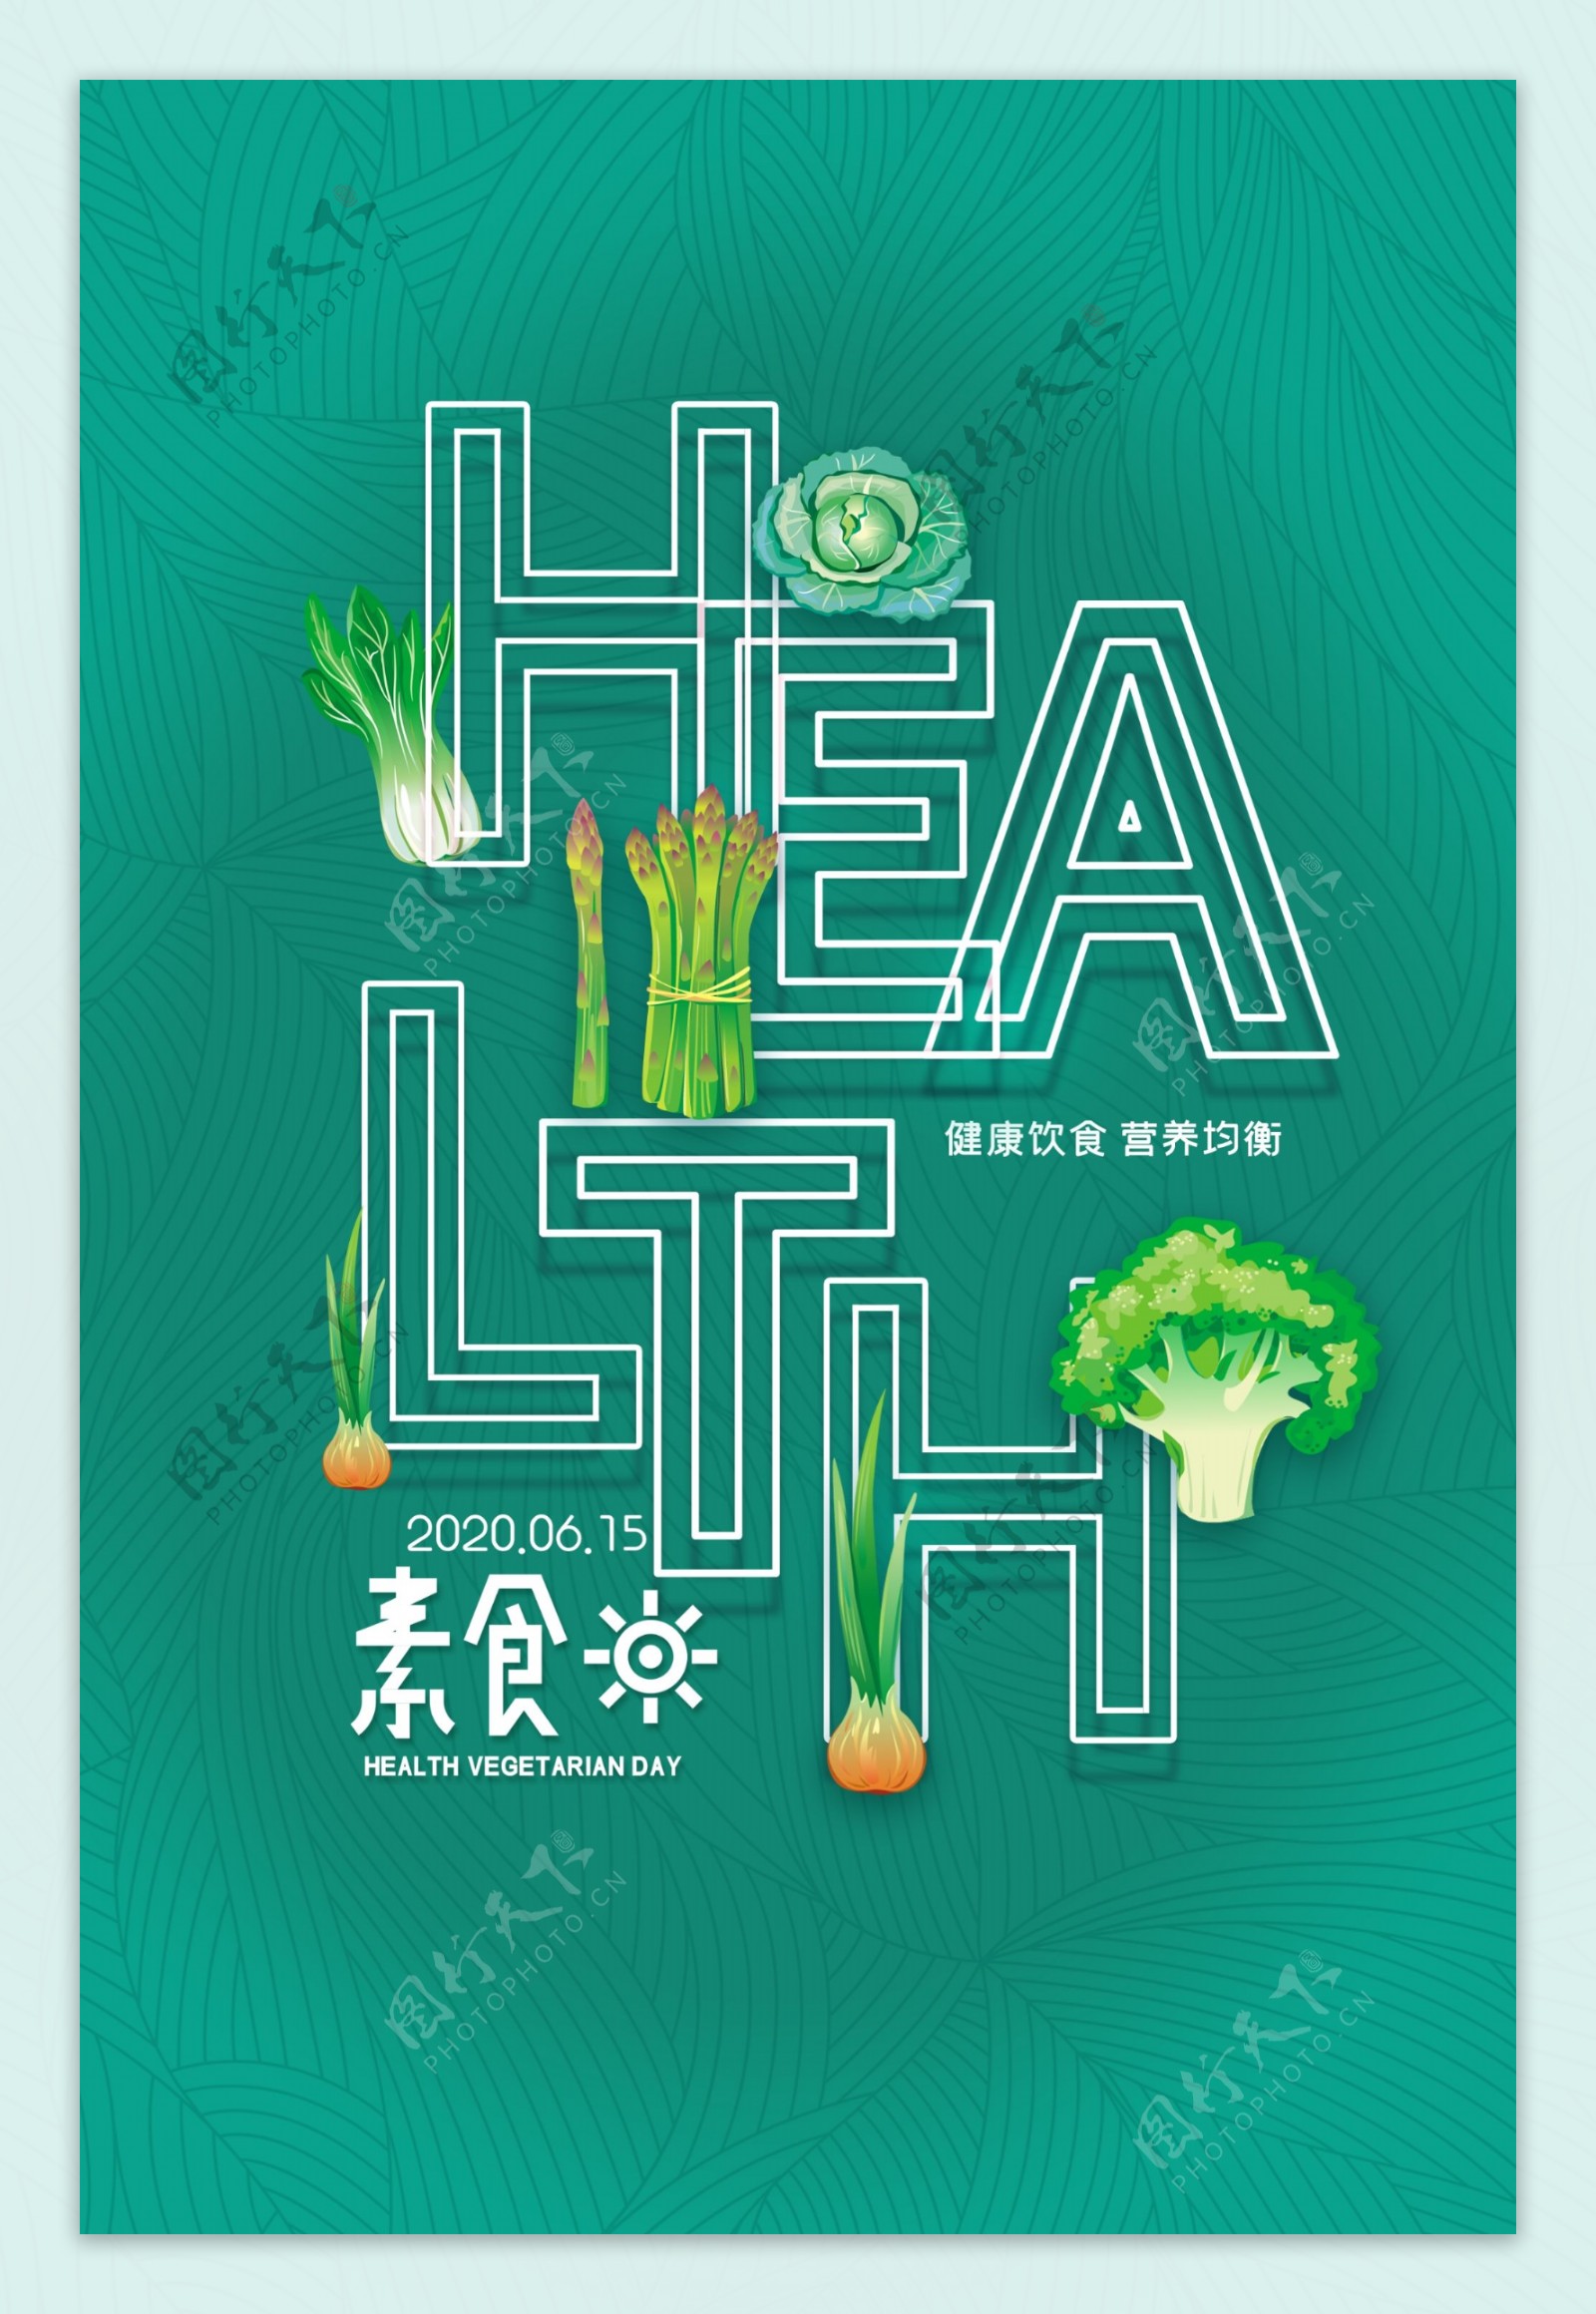 素食健康清新公益海报展板